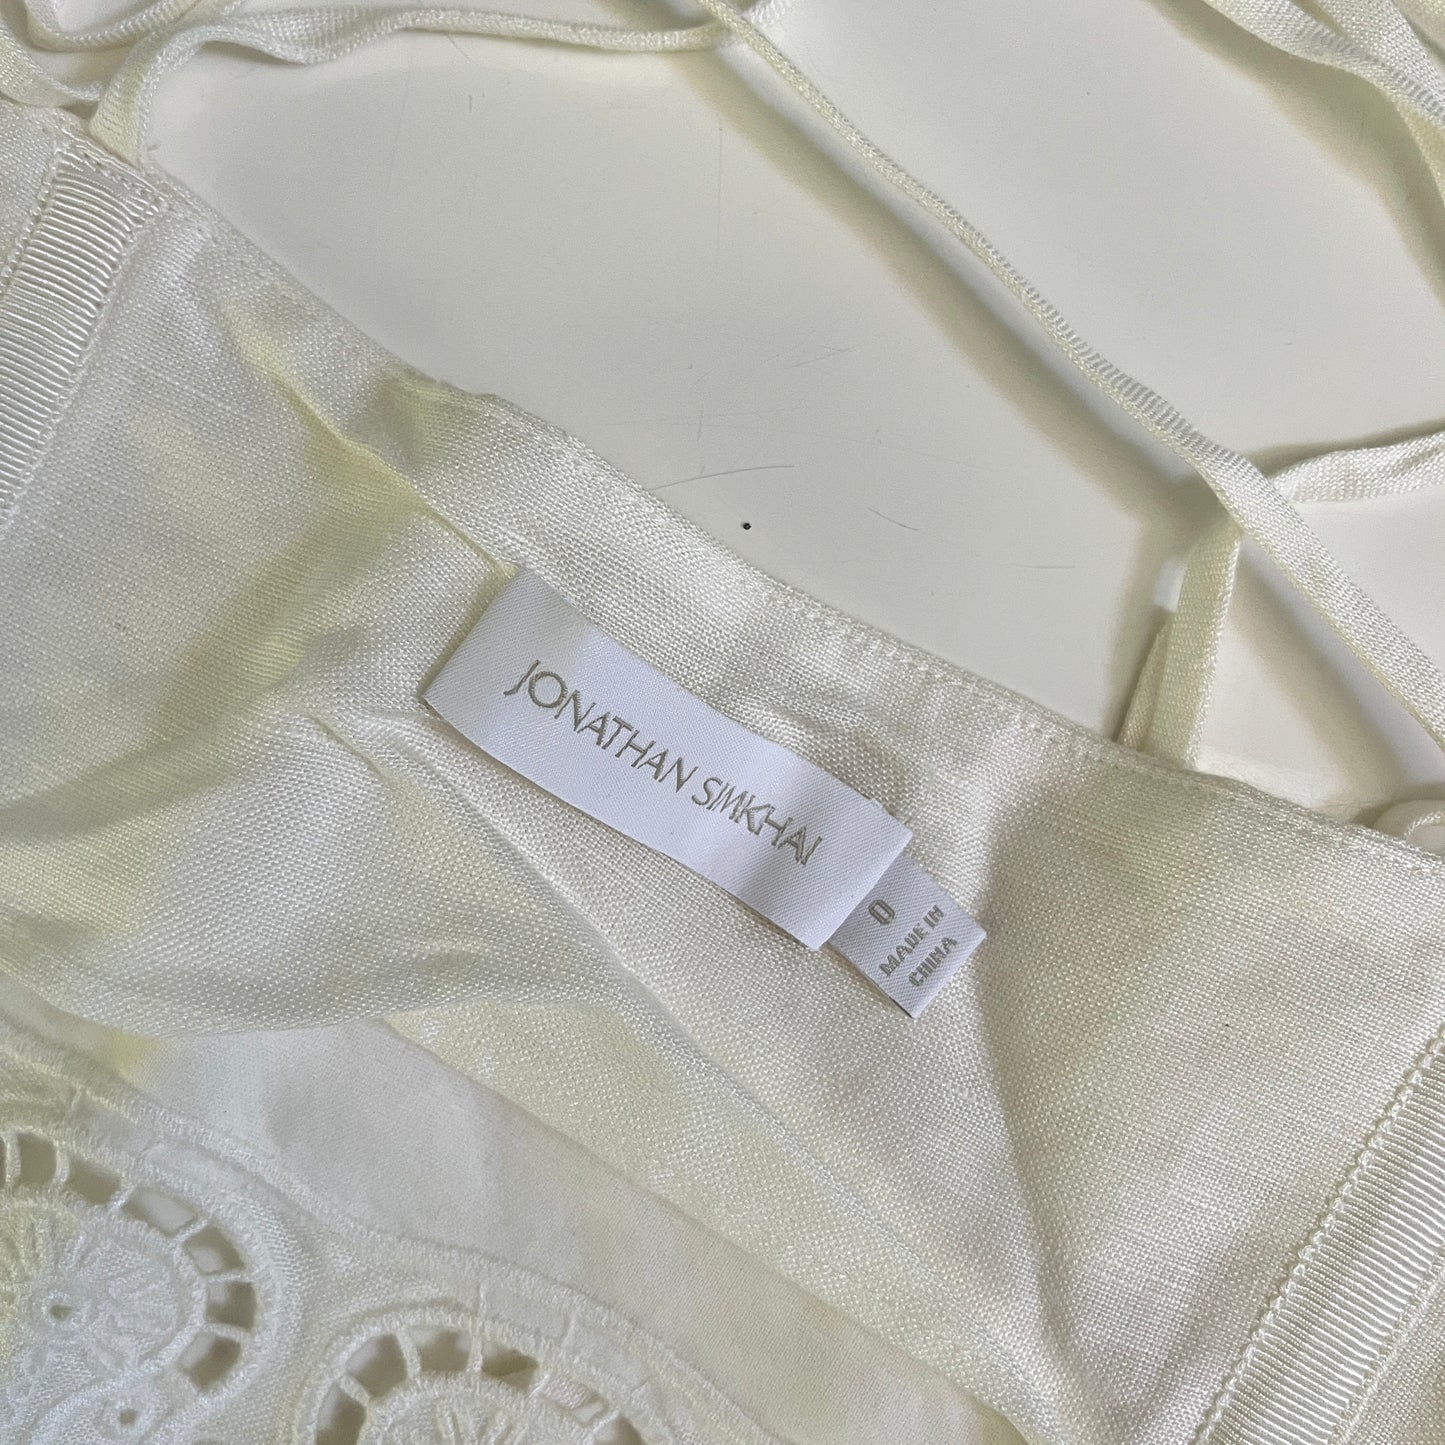 SIMKHAI Sherri Scarf Embroidered Linen Top in White